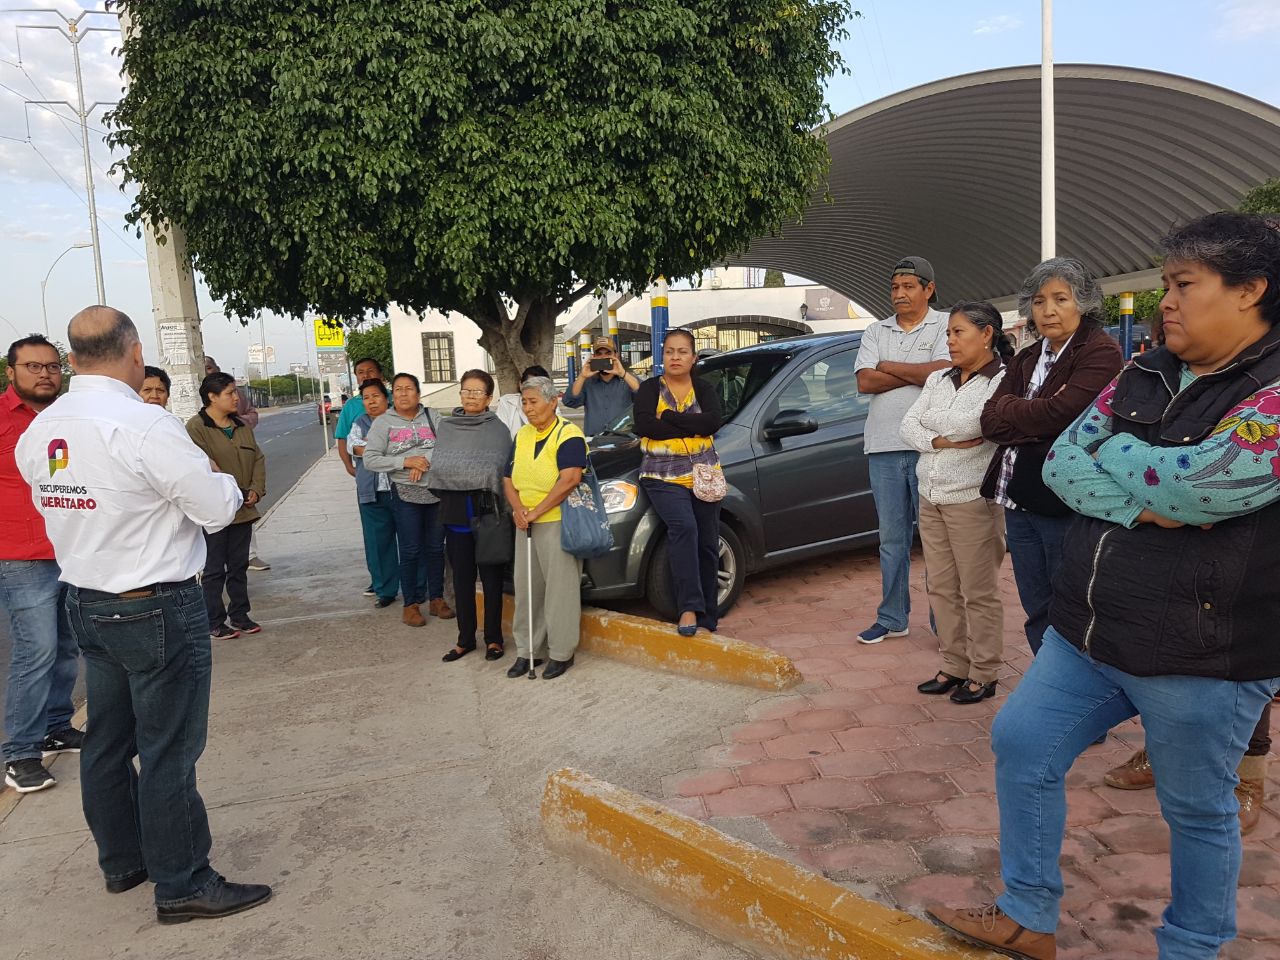  Propone Pancho Pérez descentralizar servicios públicos y que cada delegación tenga su propia policía